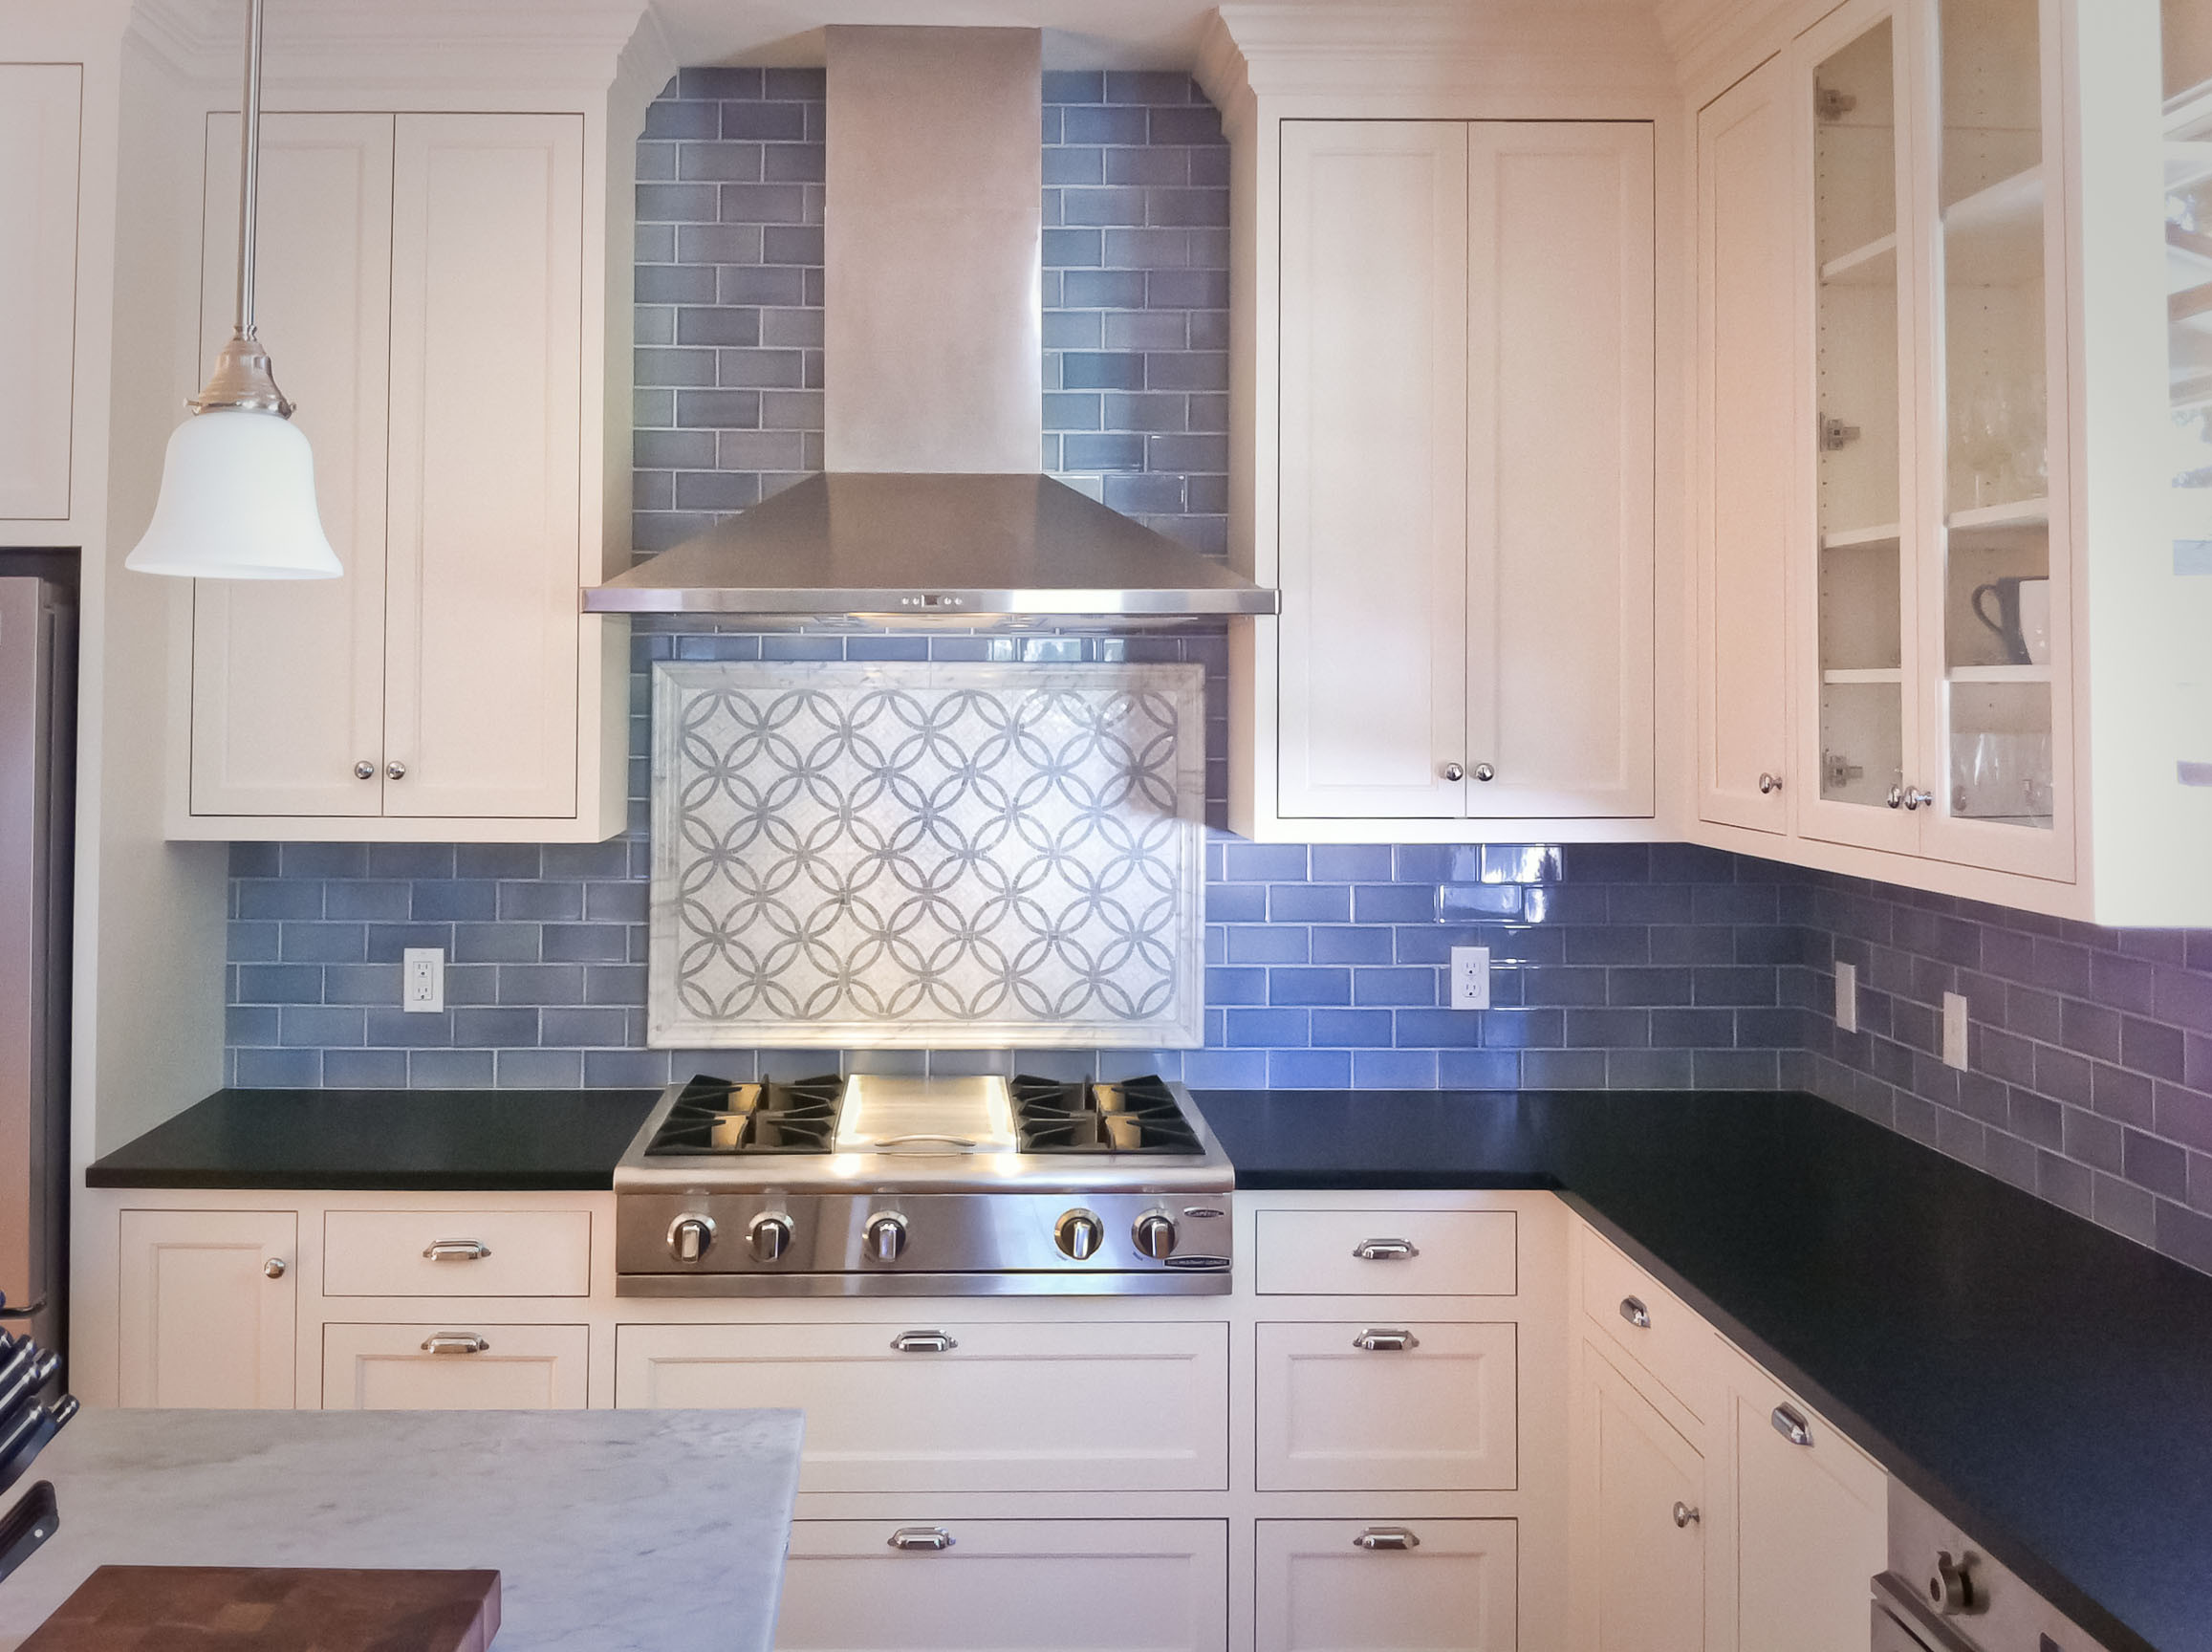 Blue Kitchen Tile Backsplash
 75 Kitchen Backsplash Ideas for 2020 Tile Glass Metal etc